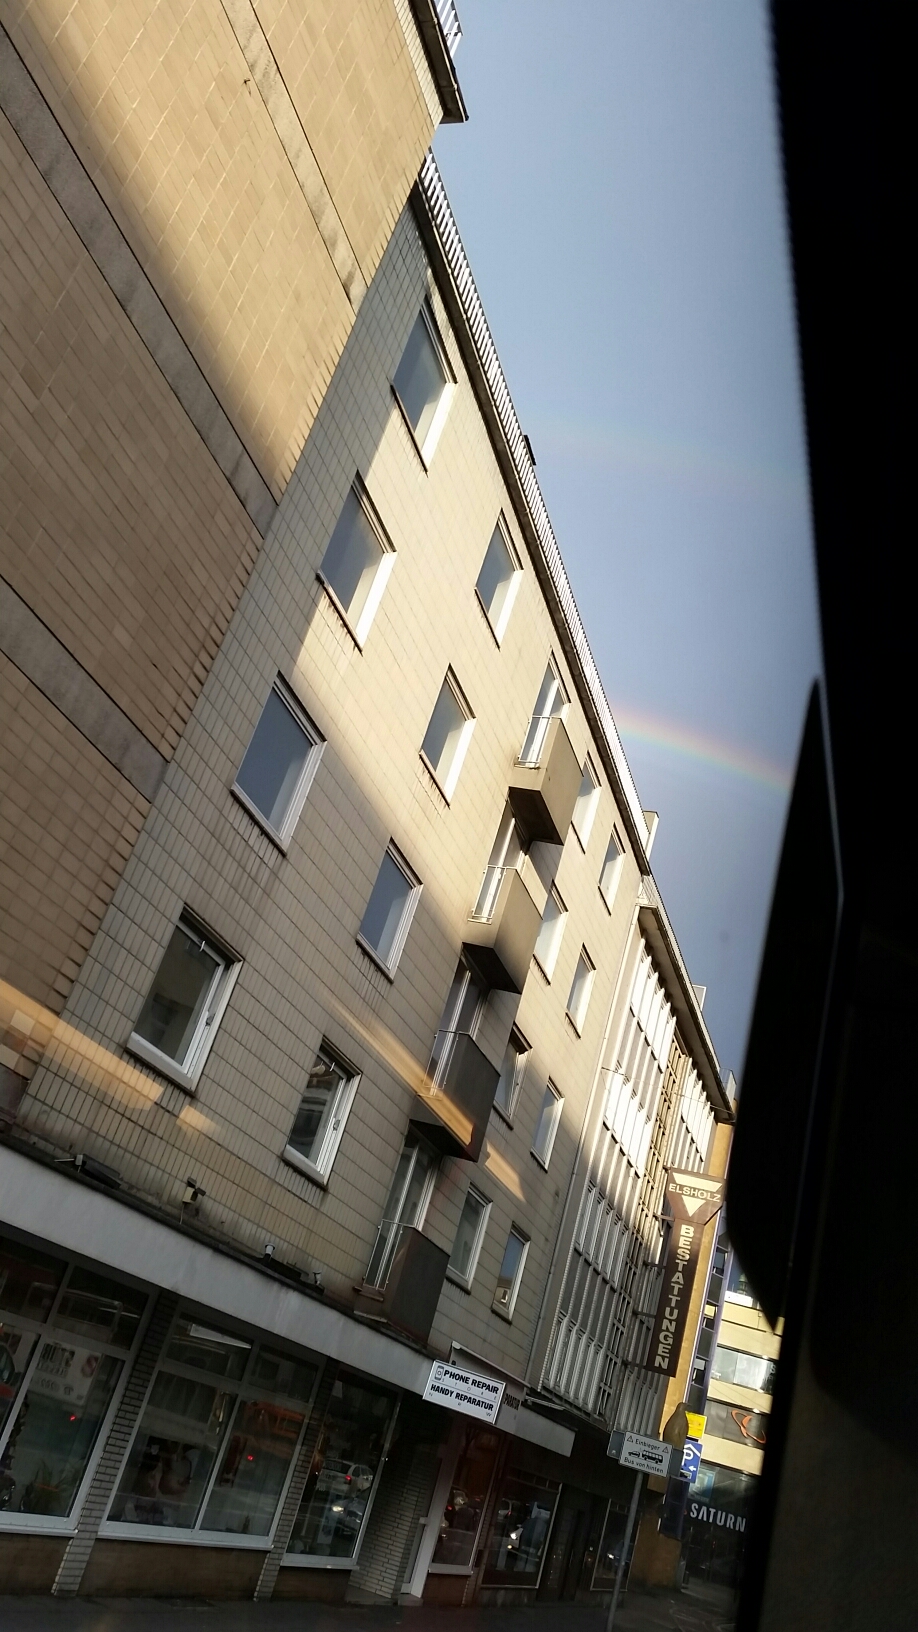 Regenbogen vor Wolken